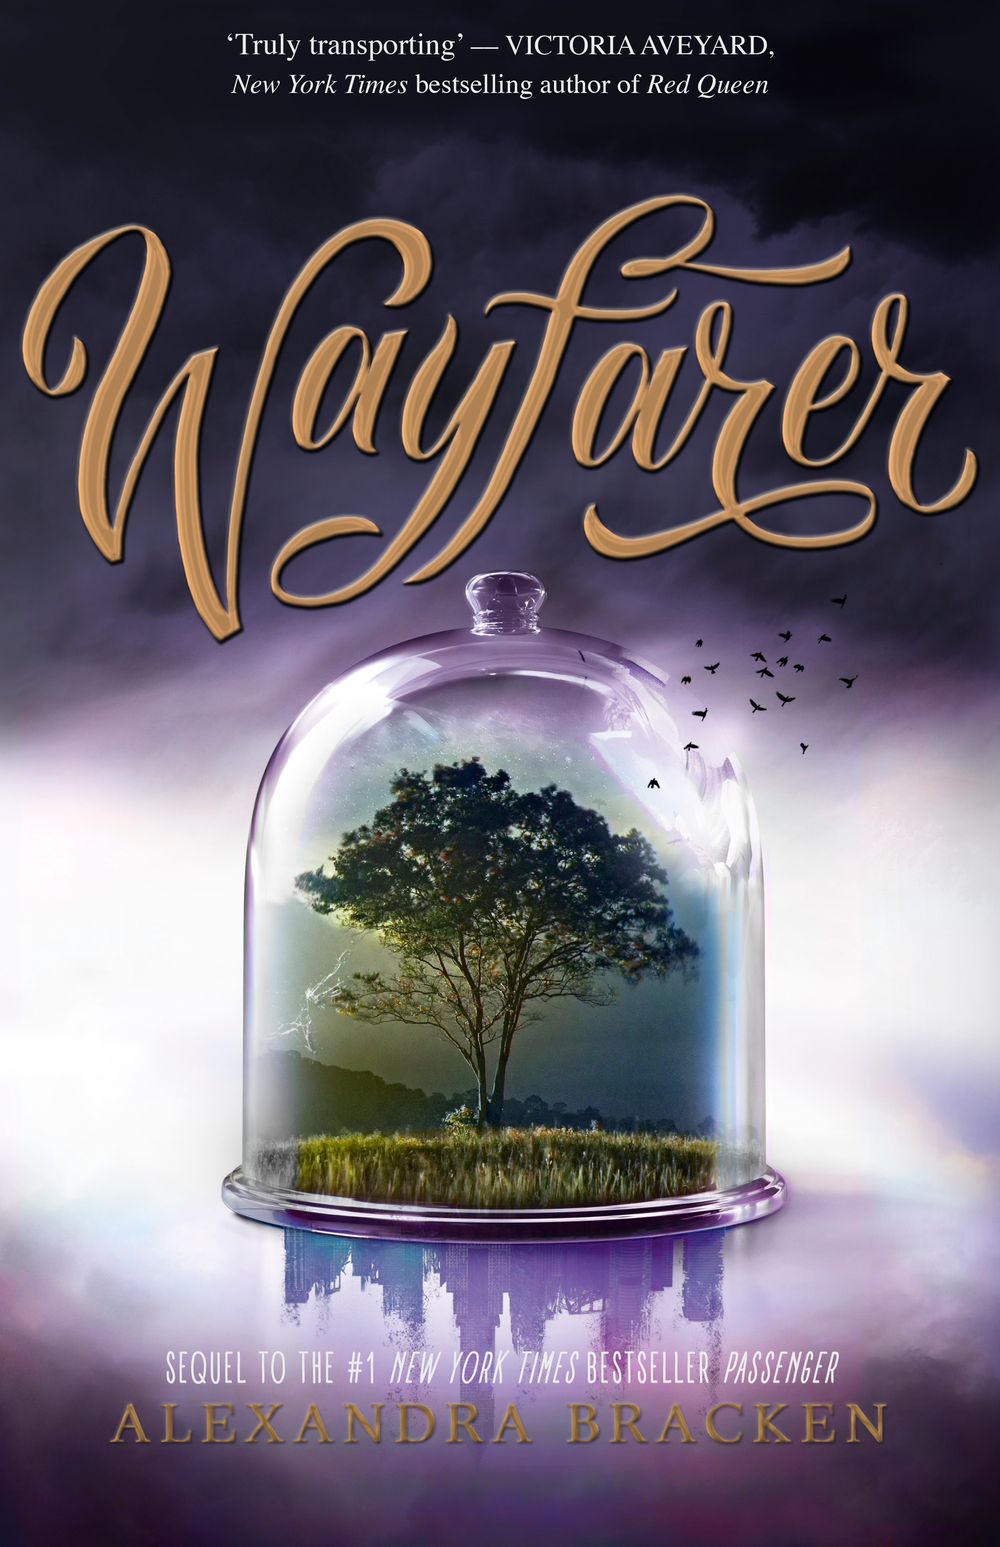 Passenger Book 2: Wayfarer Alexandra Bracken